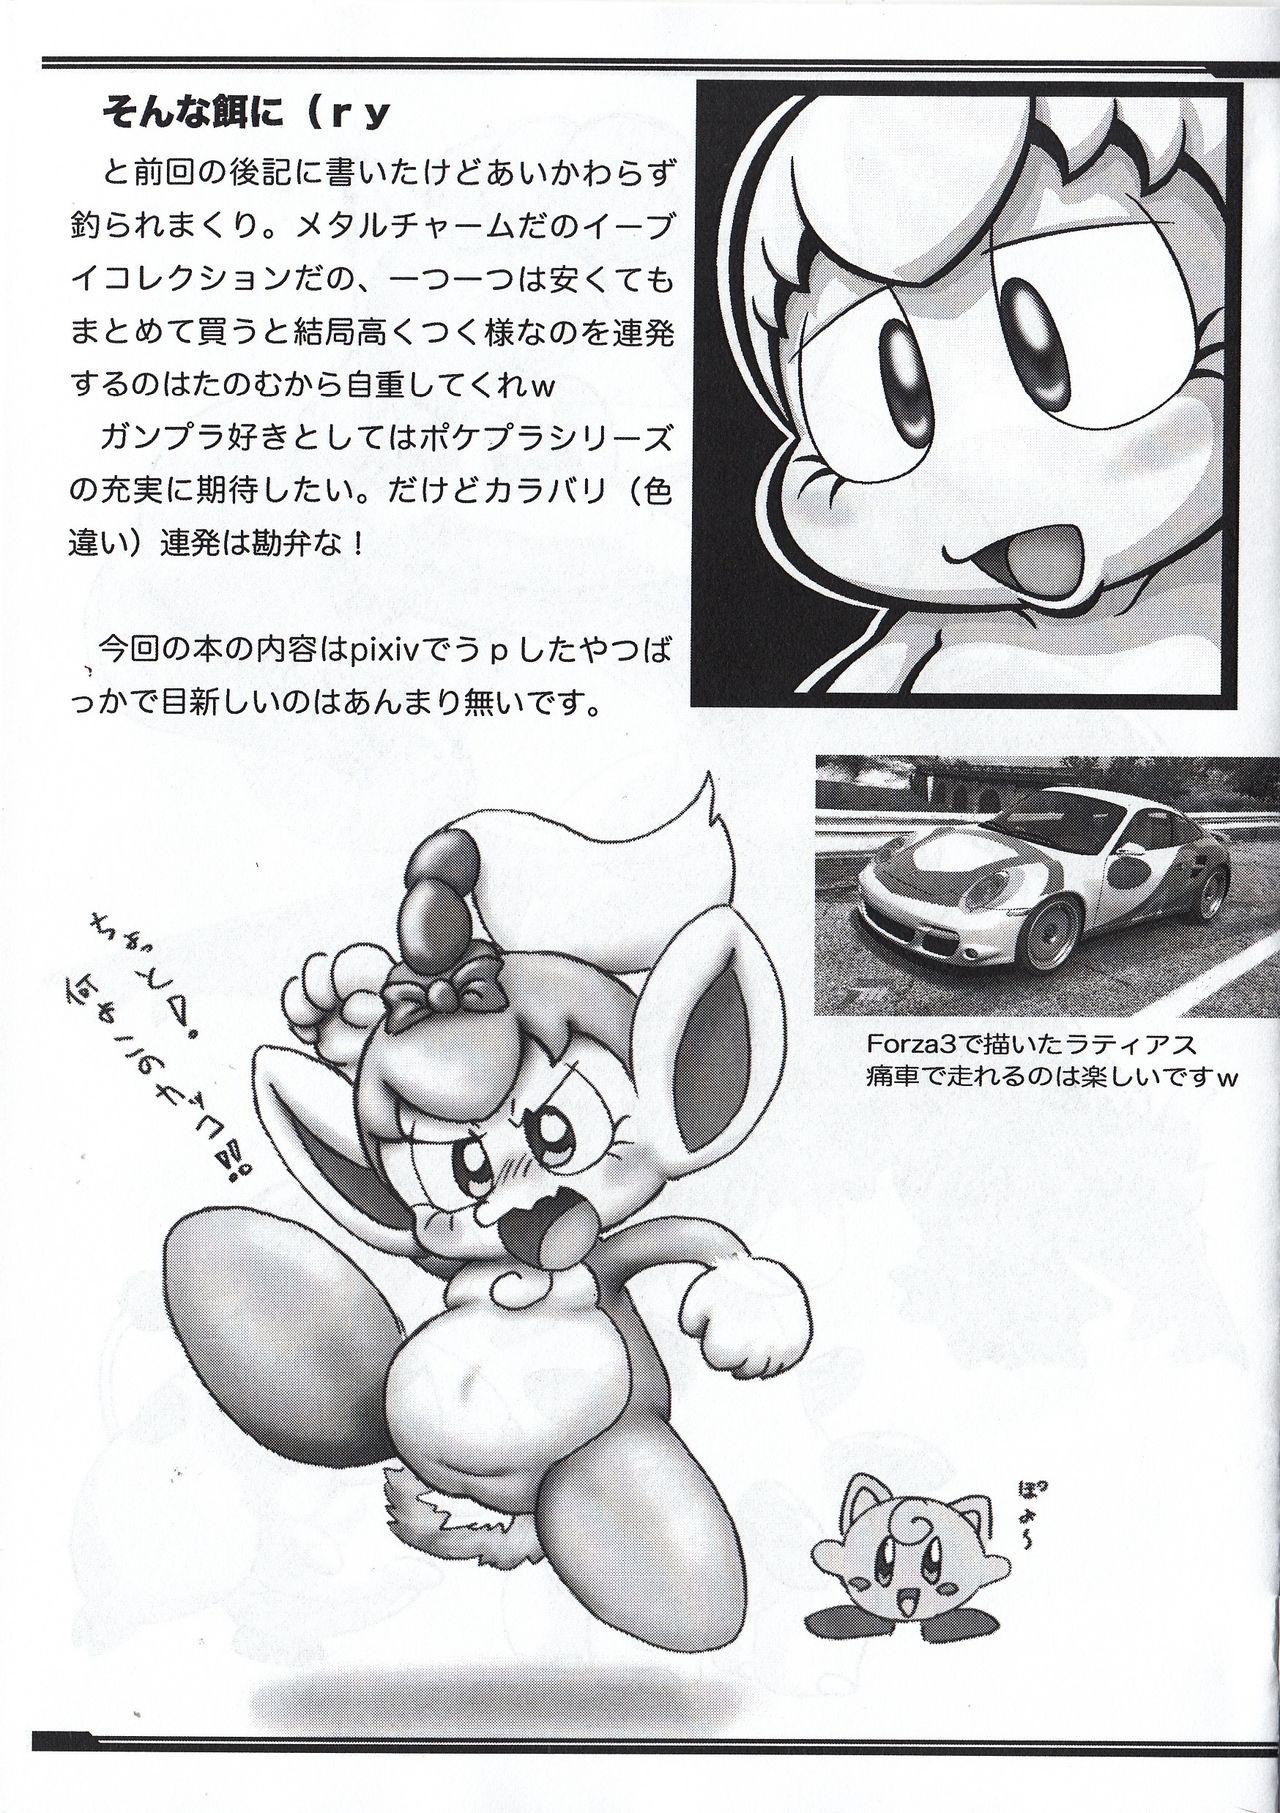 Bunda Grande P-Kemo09 - Pokemon Kirby Animal crossing Whore - Page 2